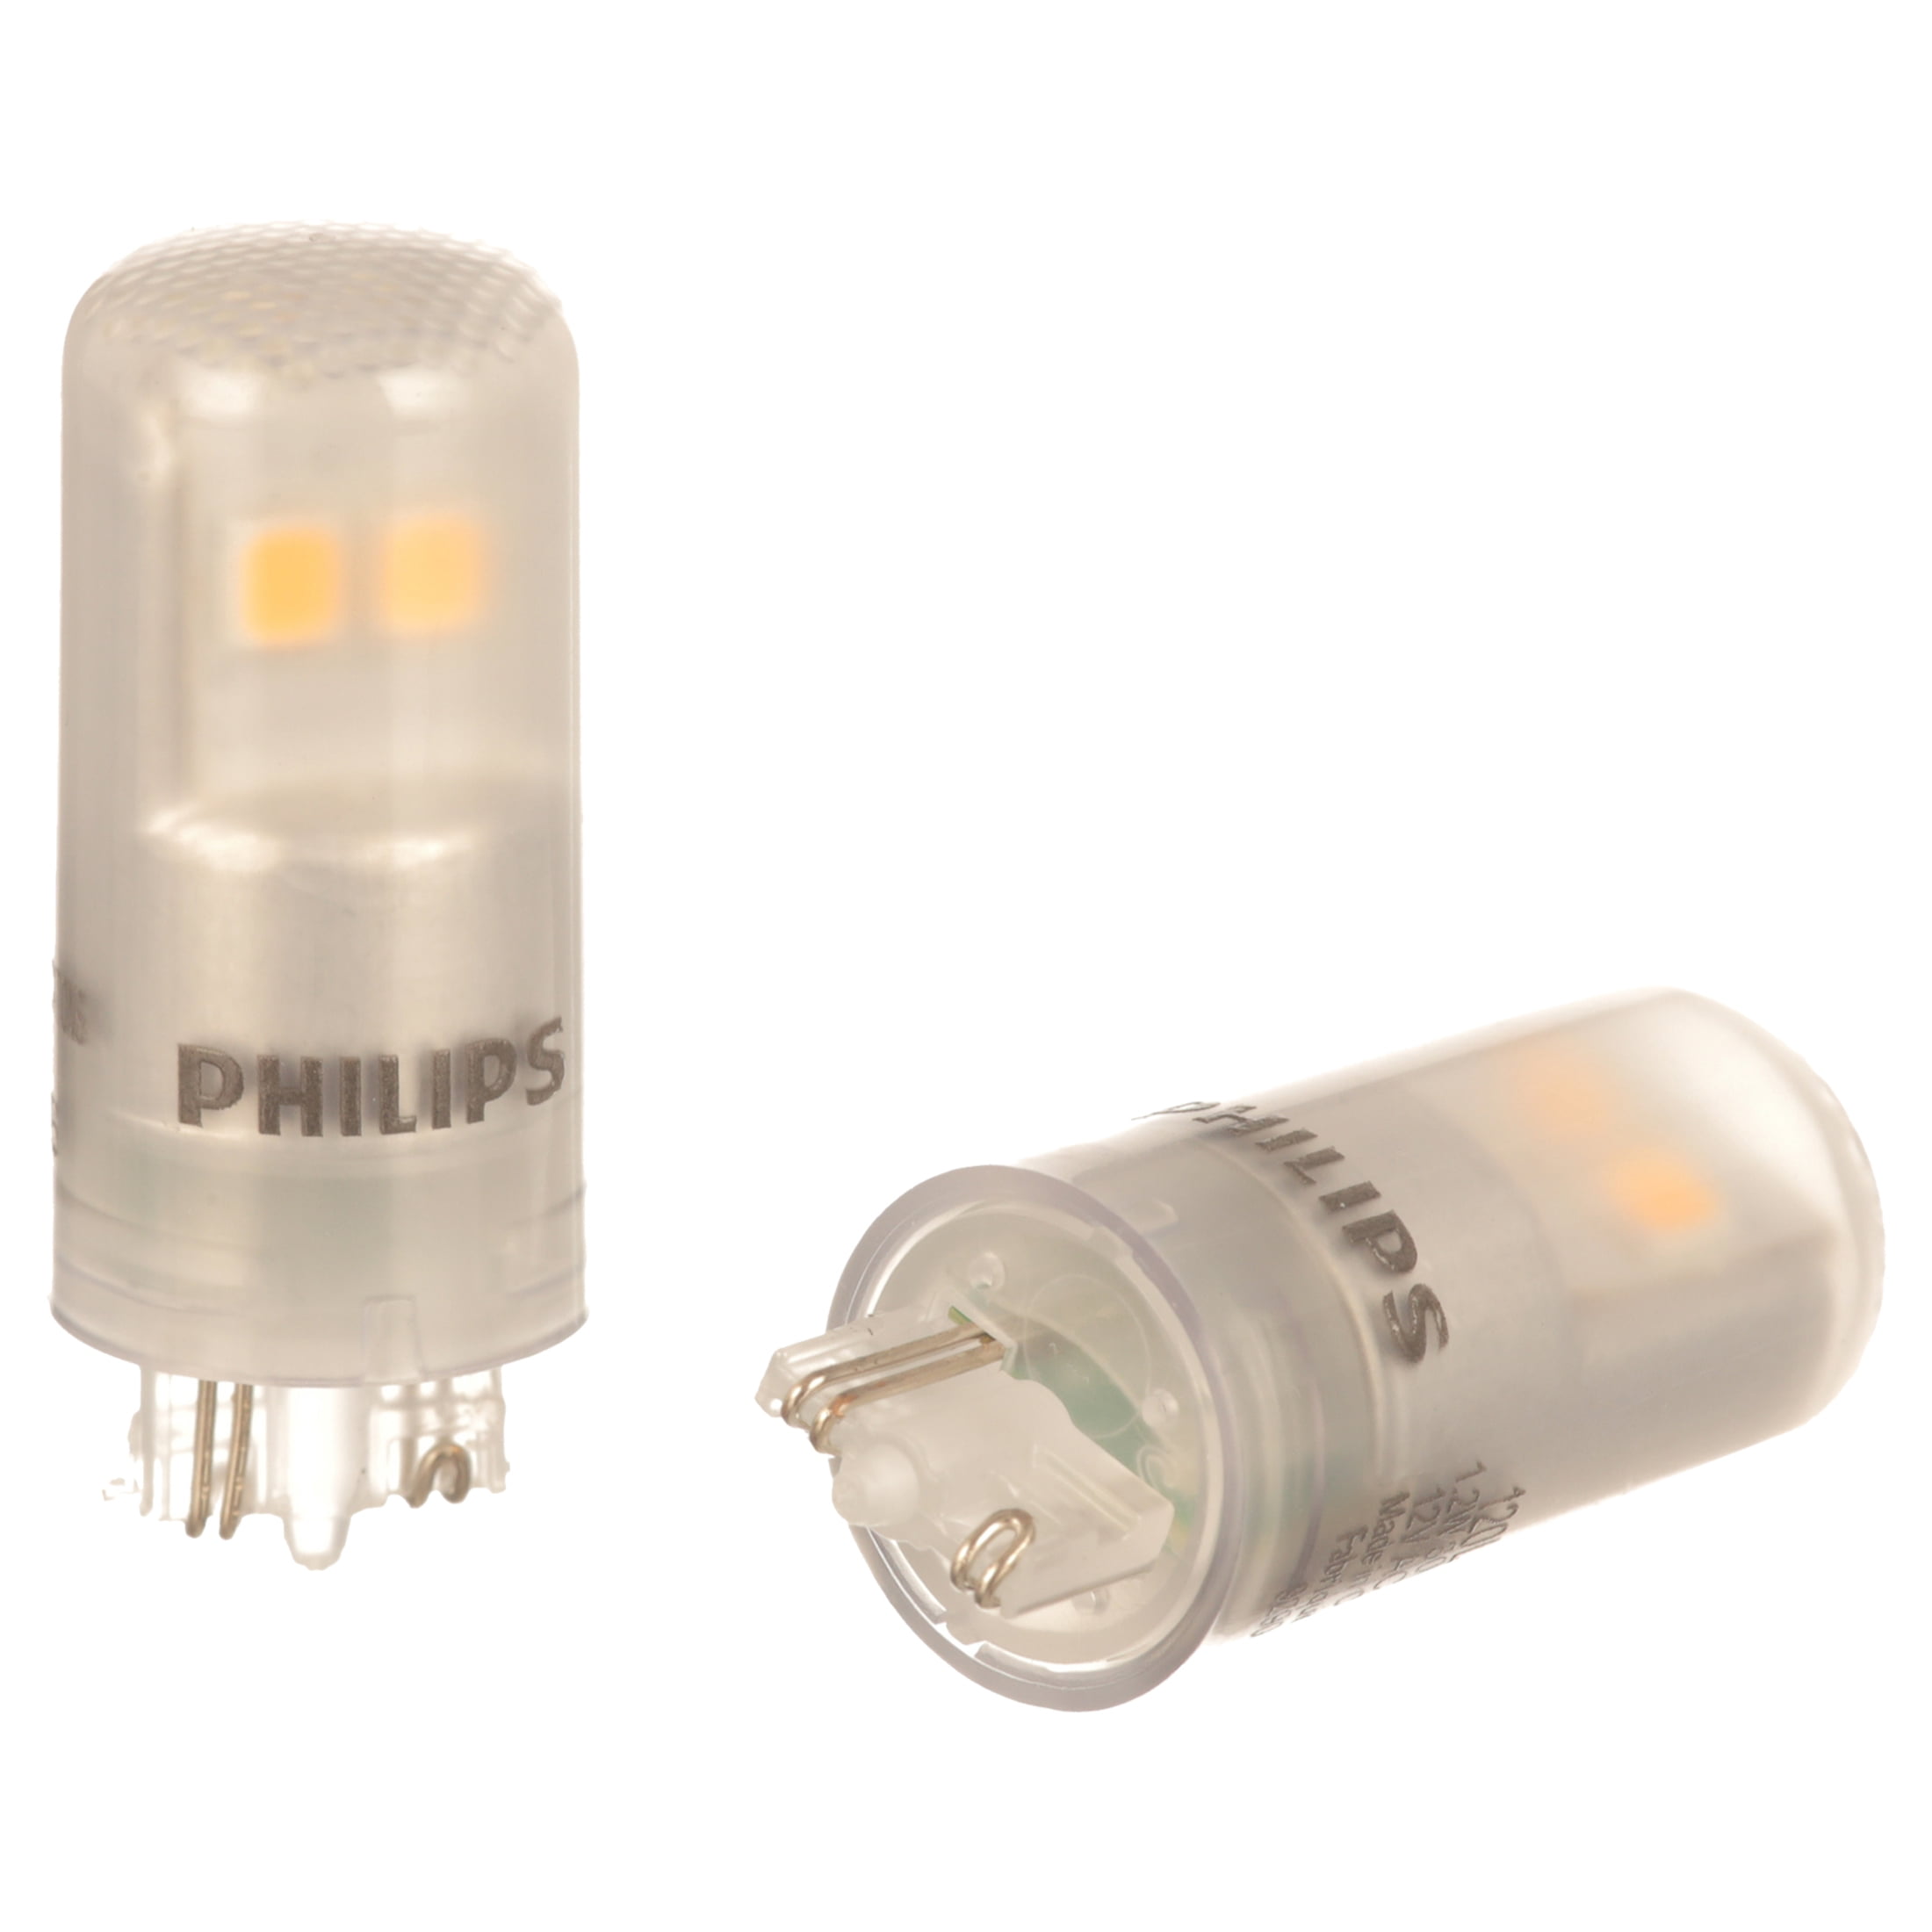 LED 7-Watt, 12-Volt T5 Landscape Tubular Light Bulb, Clear White, Non-dimmable, Wedge Base (2-Pack) - Walmart.com